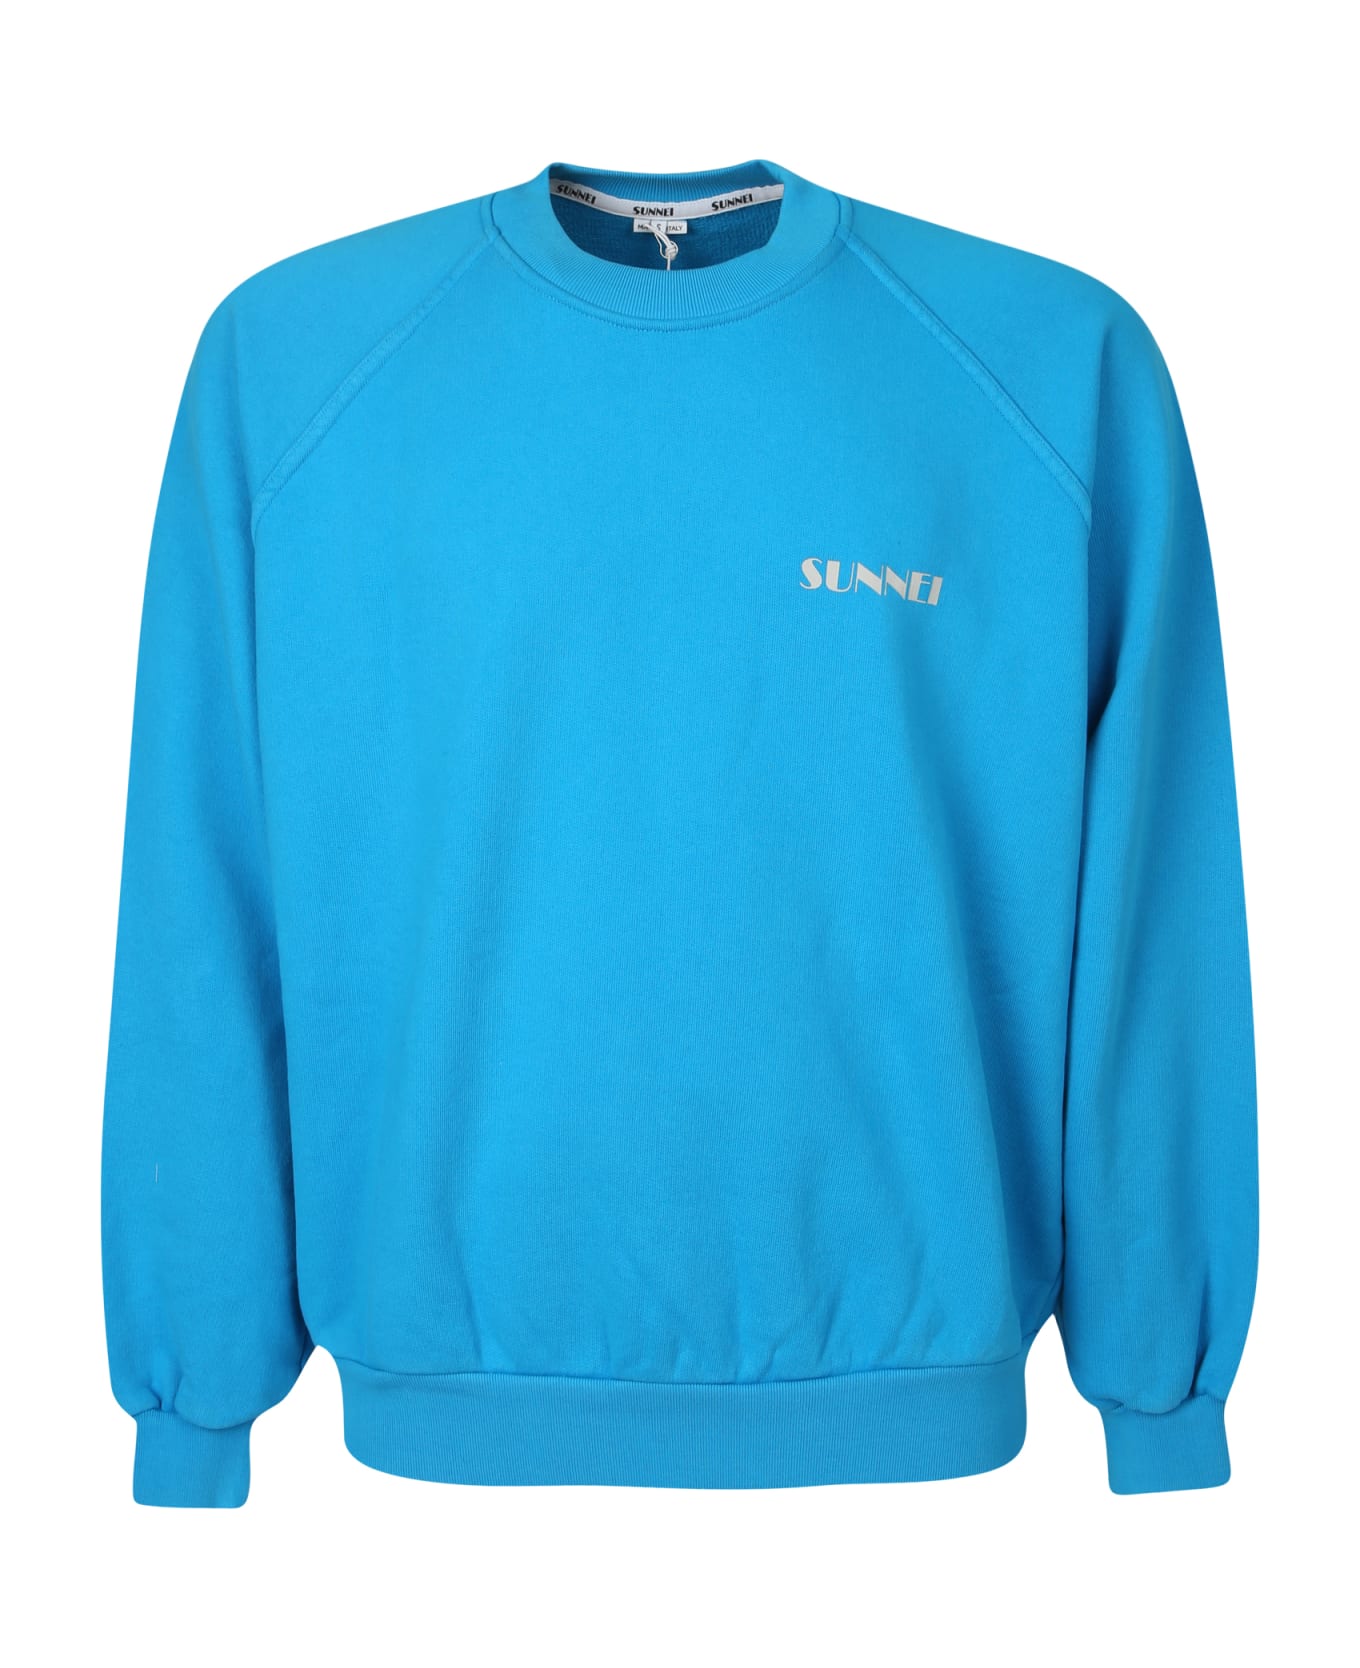 Sunnei Logo Print Round Neck Sweatshirt - Blue フリース